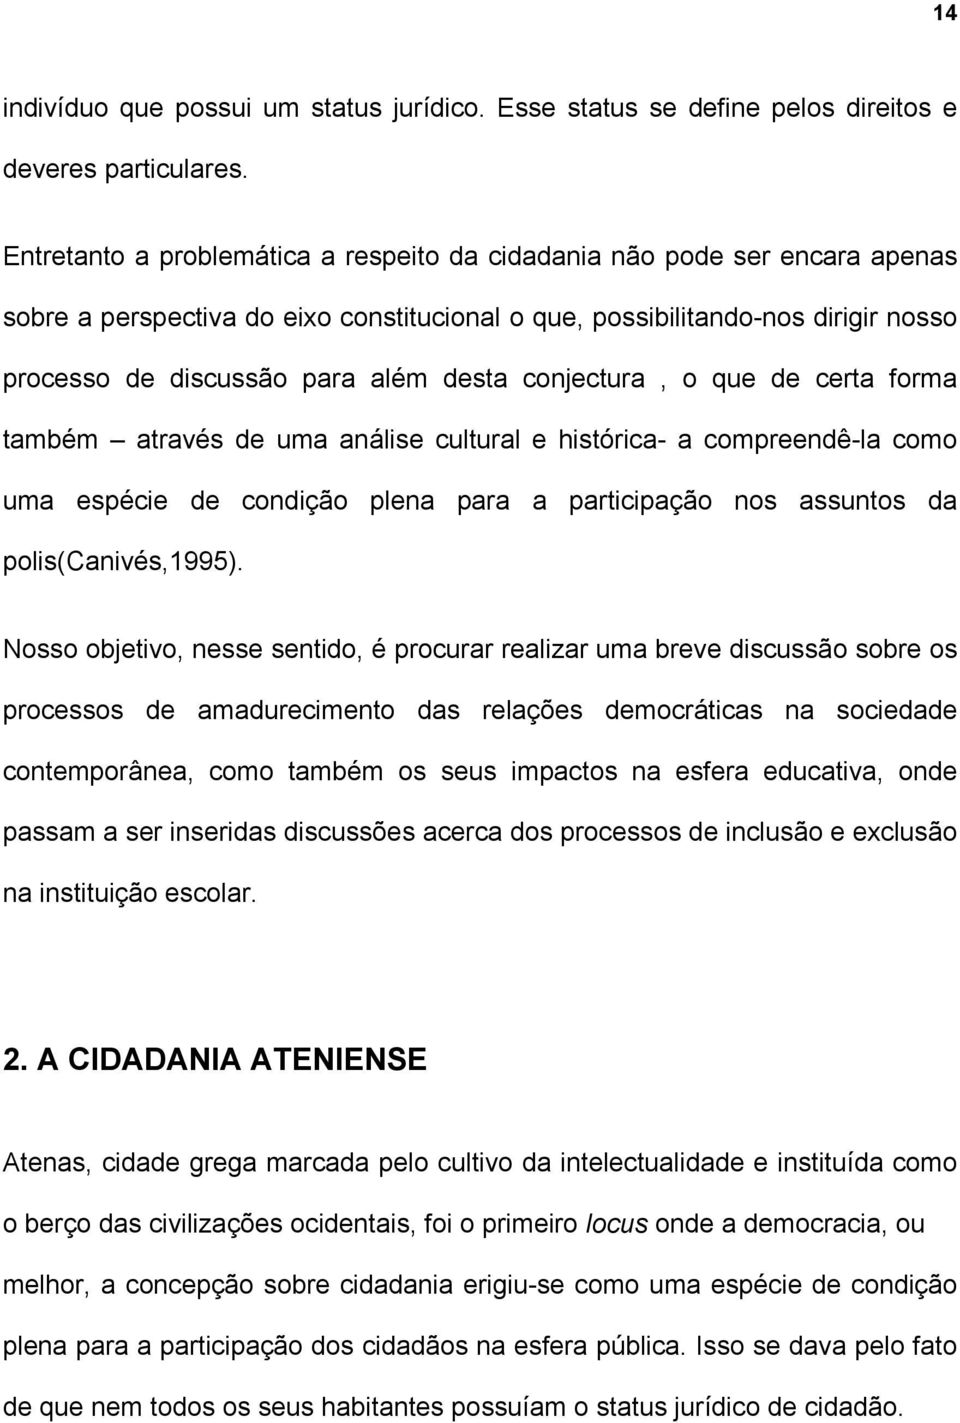 conjectura, o que de certa forma também através de uma análise cultural e histórica- a compreendê-la como uma espécie de condição plena para a participação nos assuntos da polis(canivés,1995).